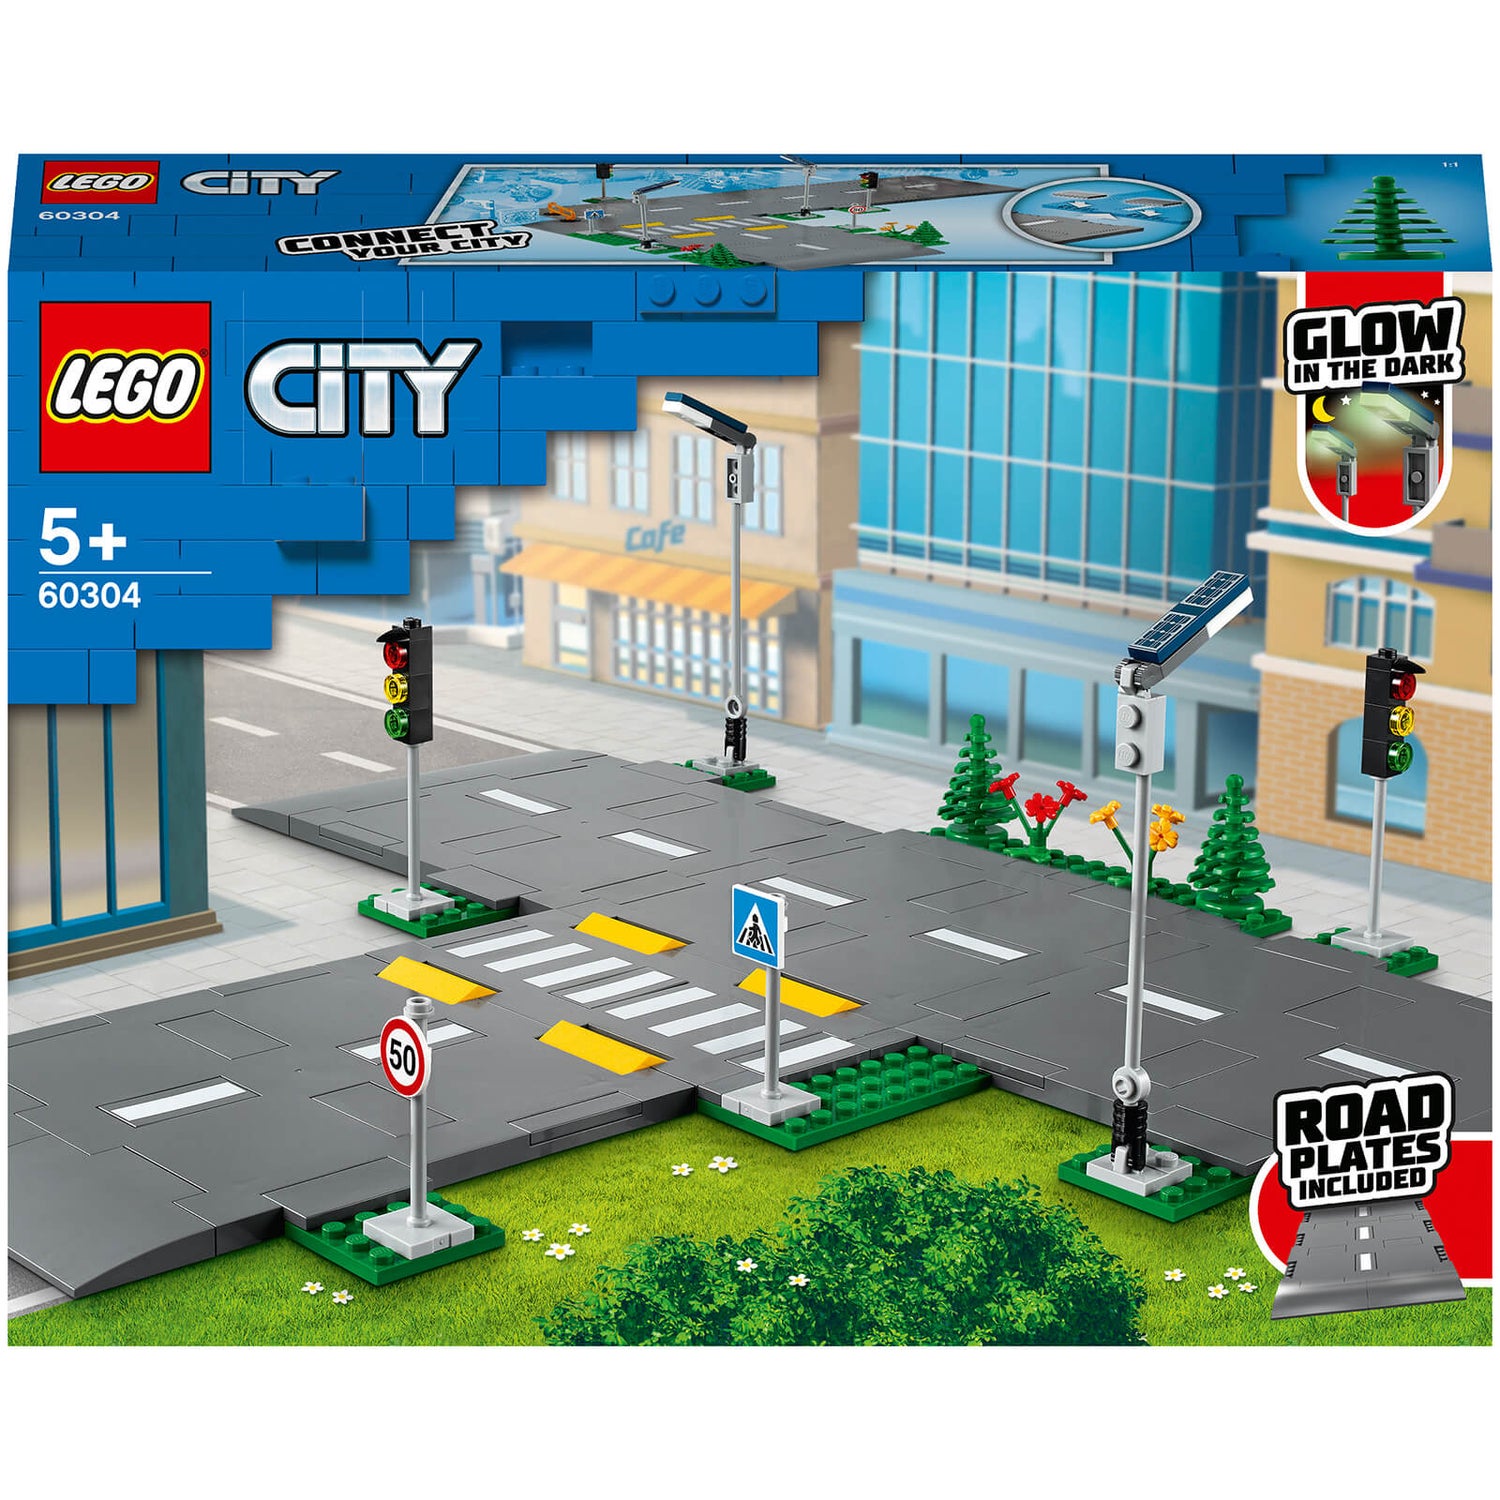 LEGO City: Wegplaten Bouwset met Verkeerslichten (60304)